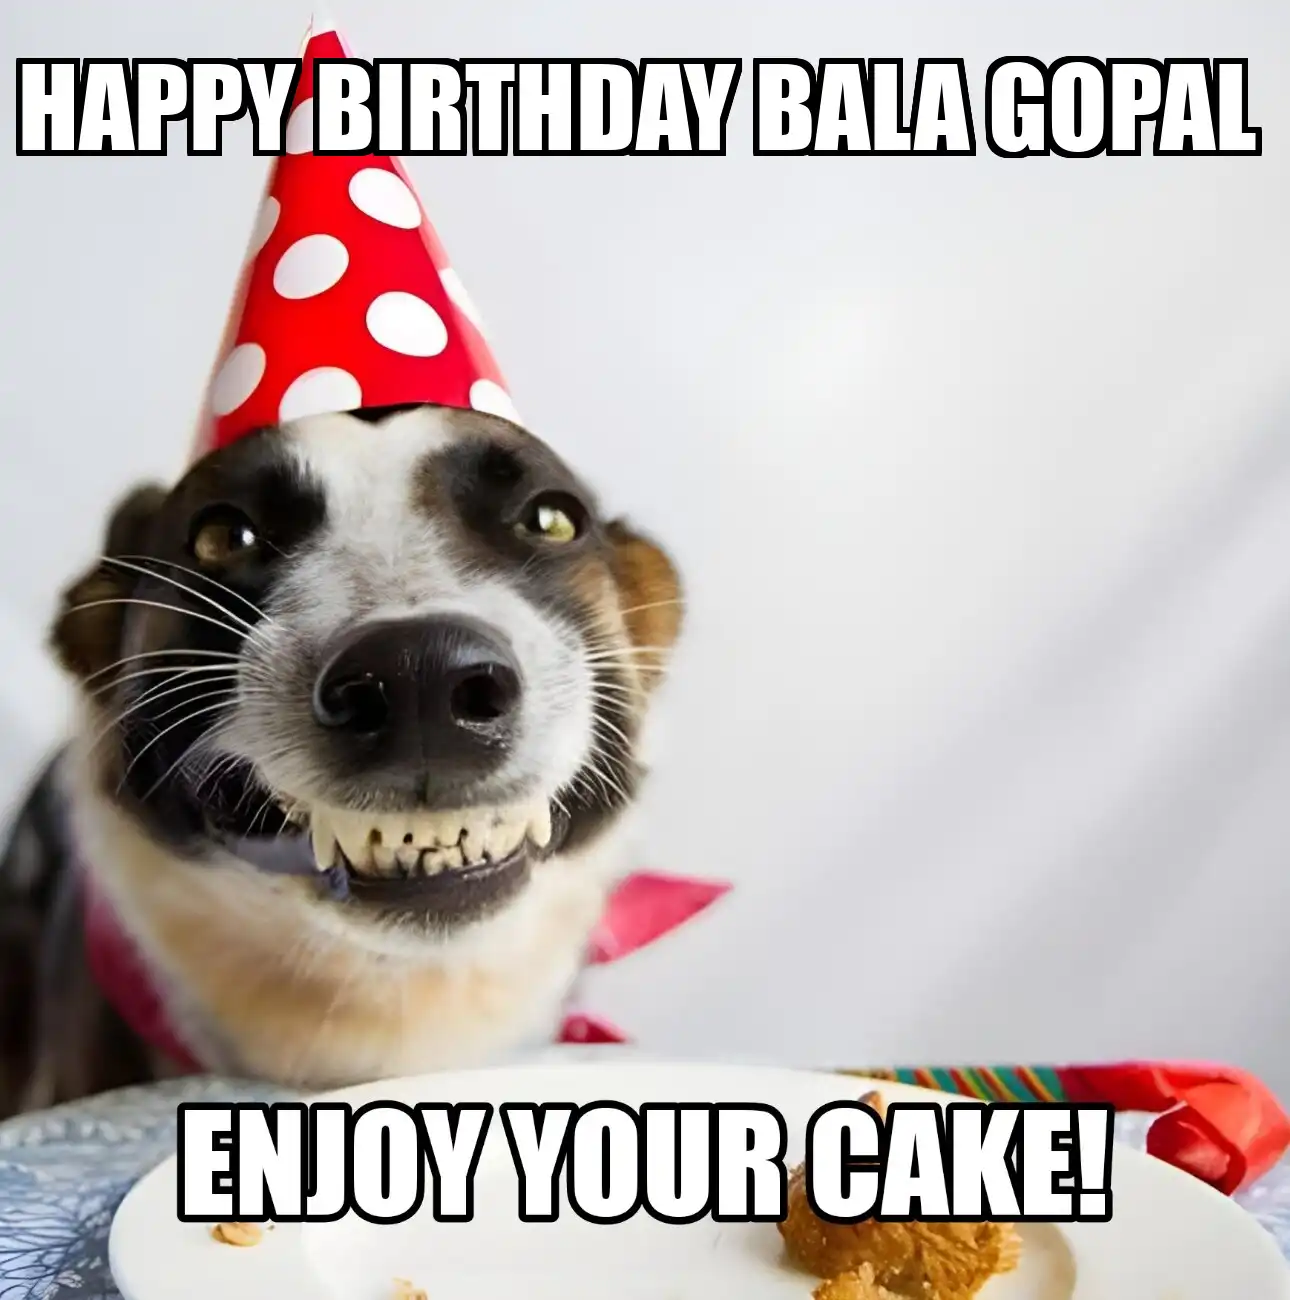 Happy Birthday Bala Gopal Enjoy Your Cake Dog Meme